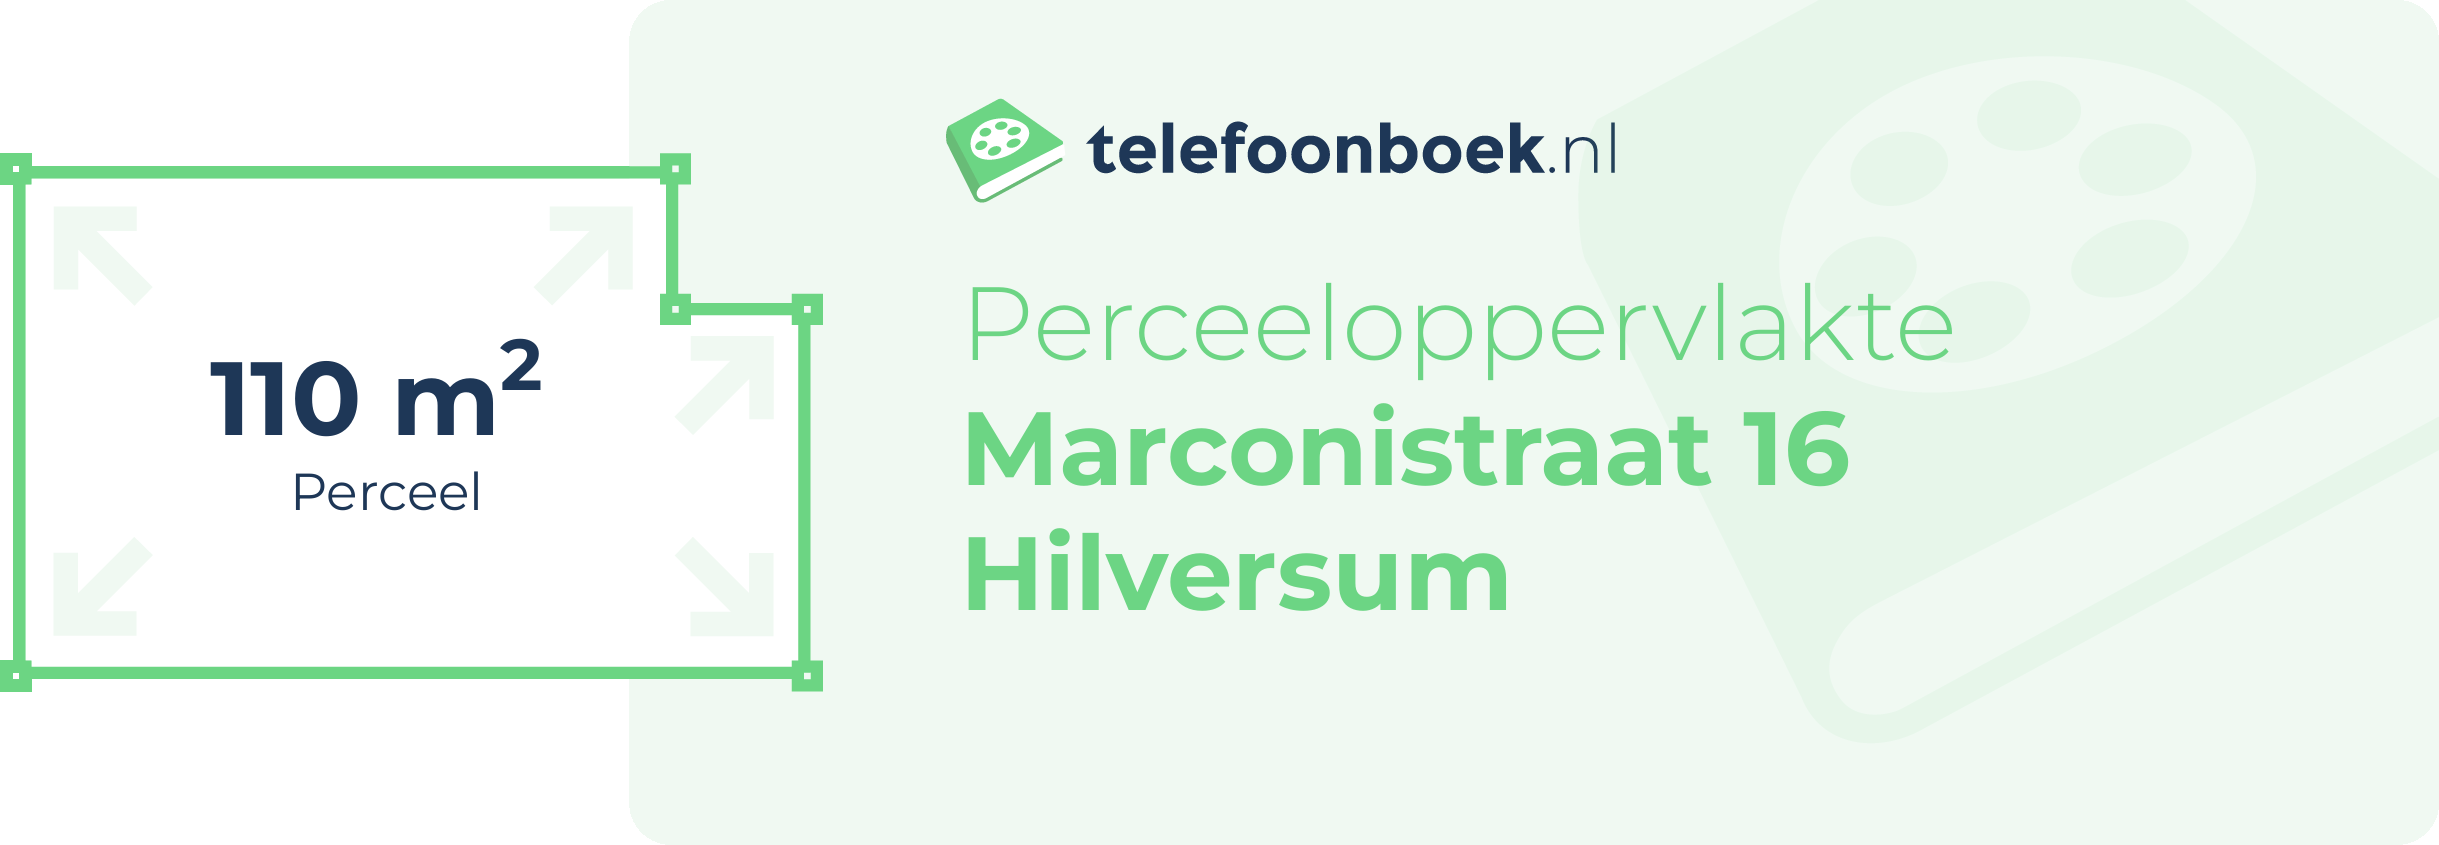 Perceeloppervlakte Marconistraat 16 Hilversum